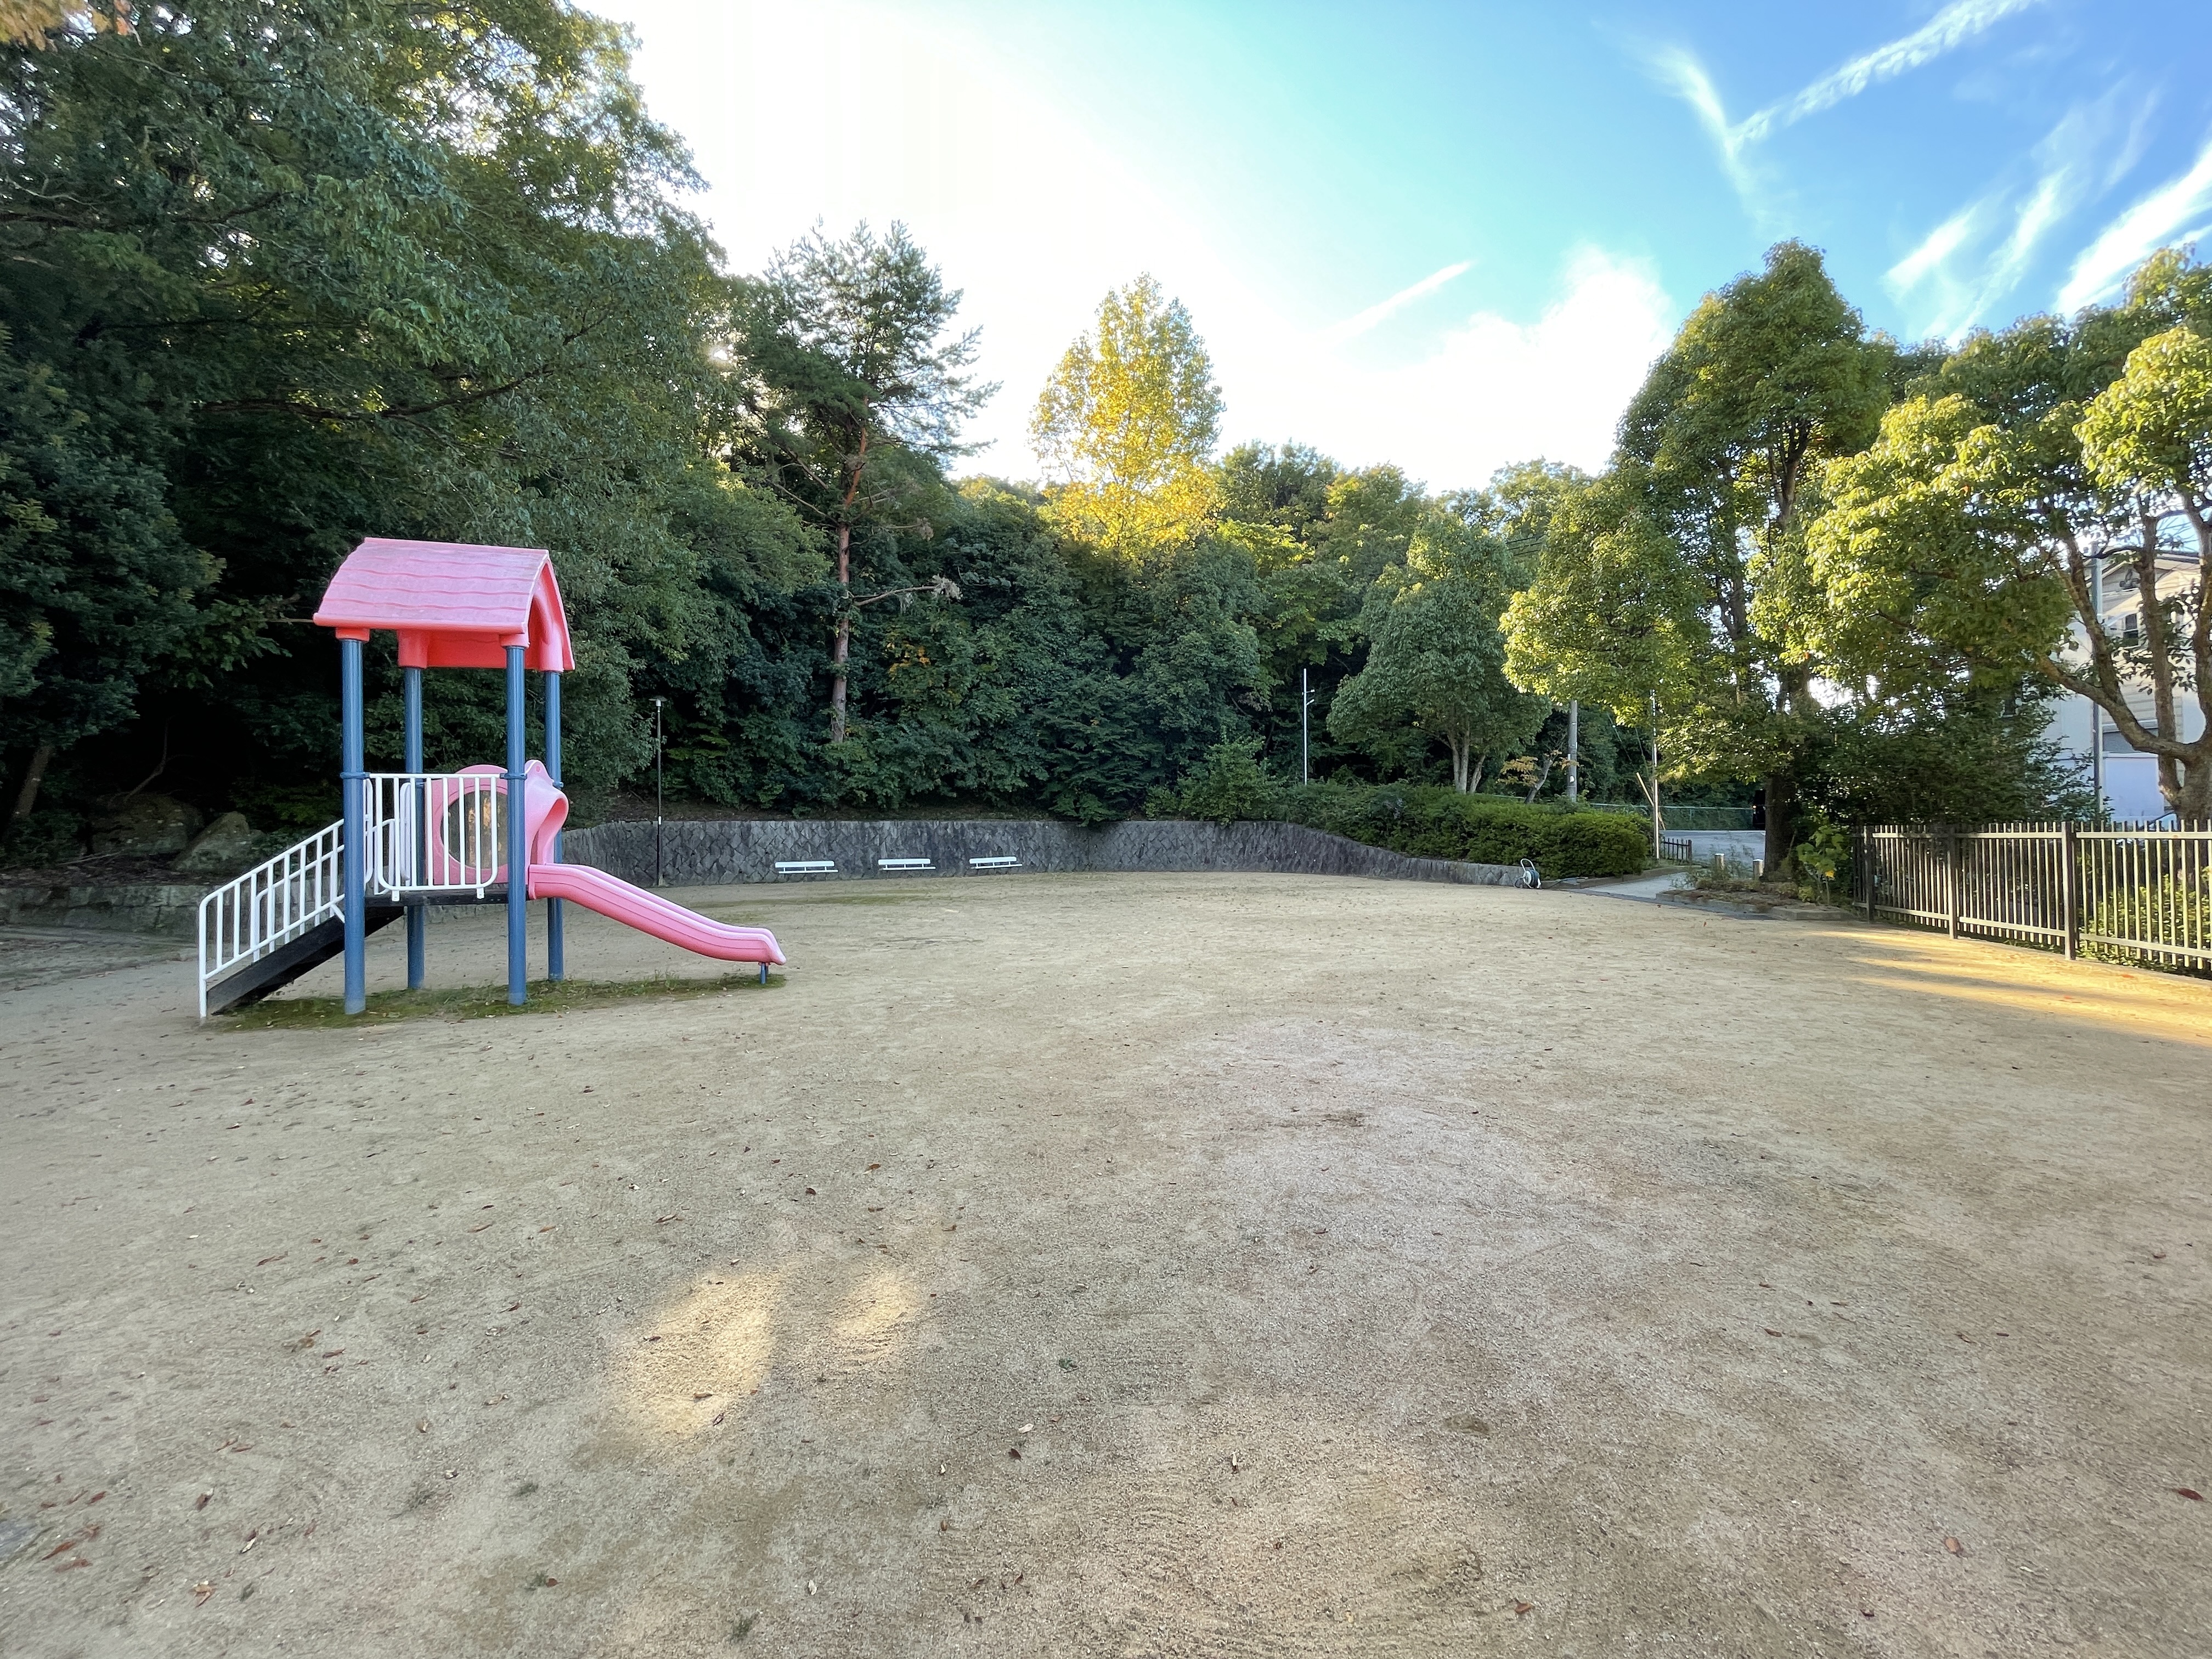 お家の近く、歩いて約3分の距離にも<br />
「湯谷川公園」という緑に囲まれた公園があり、<br />
ブランコやすべり台などの遊具と広場がございます。